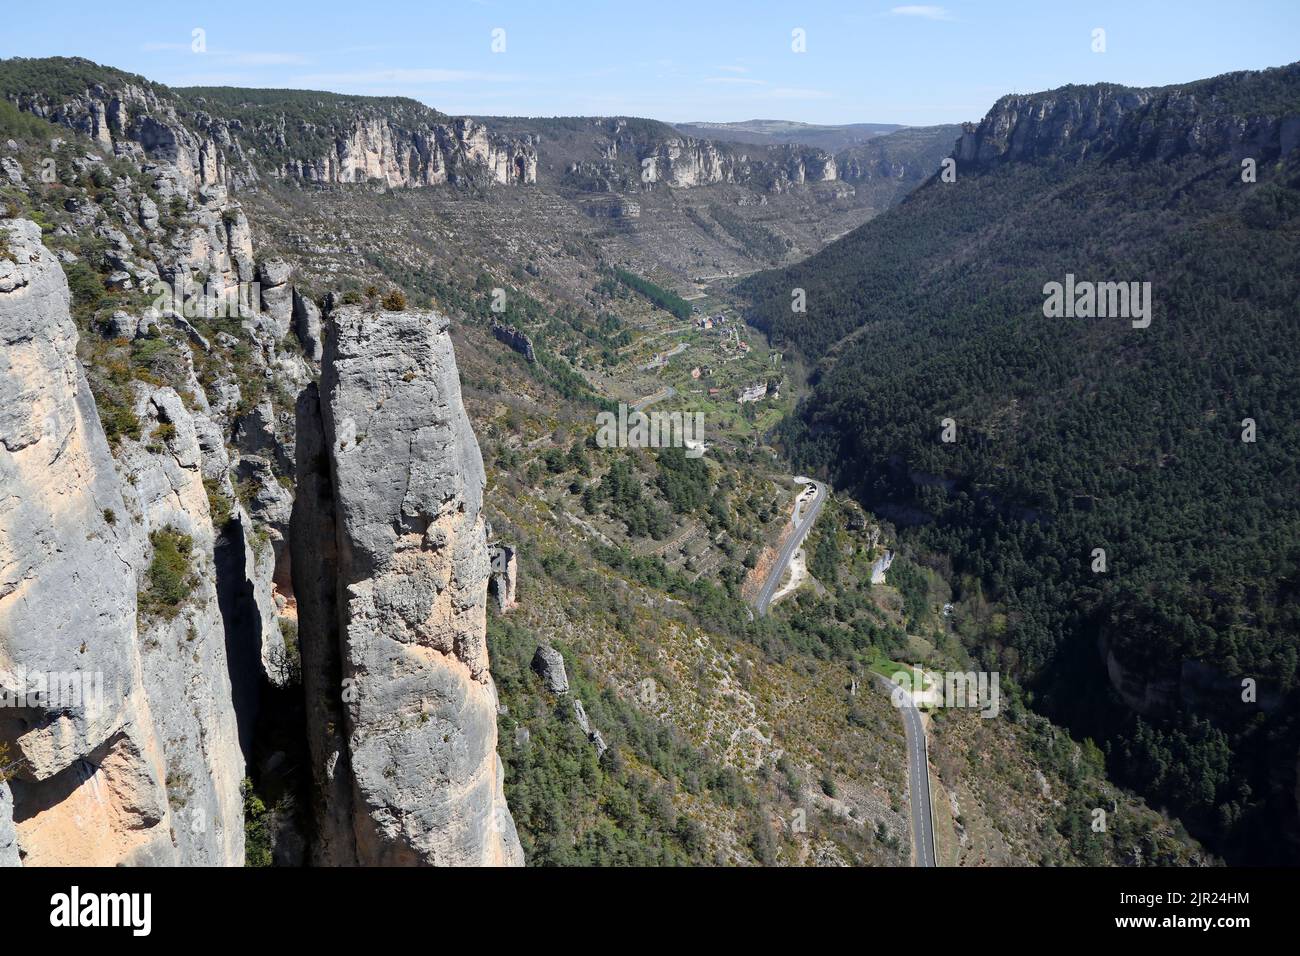 Vue de haut niveau des Gorges de la Jonte depuis le Sentier les Corniches du Causse Méjean près du Rozier, Parc naturel des Cévennes, France. Banque D'Images